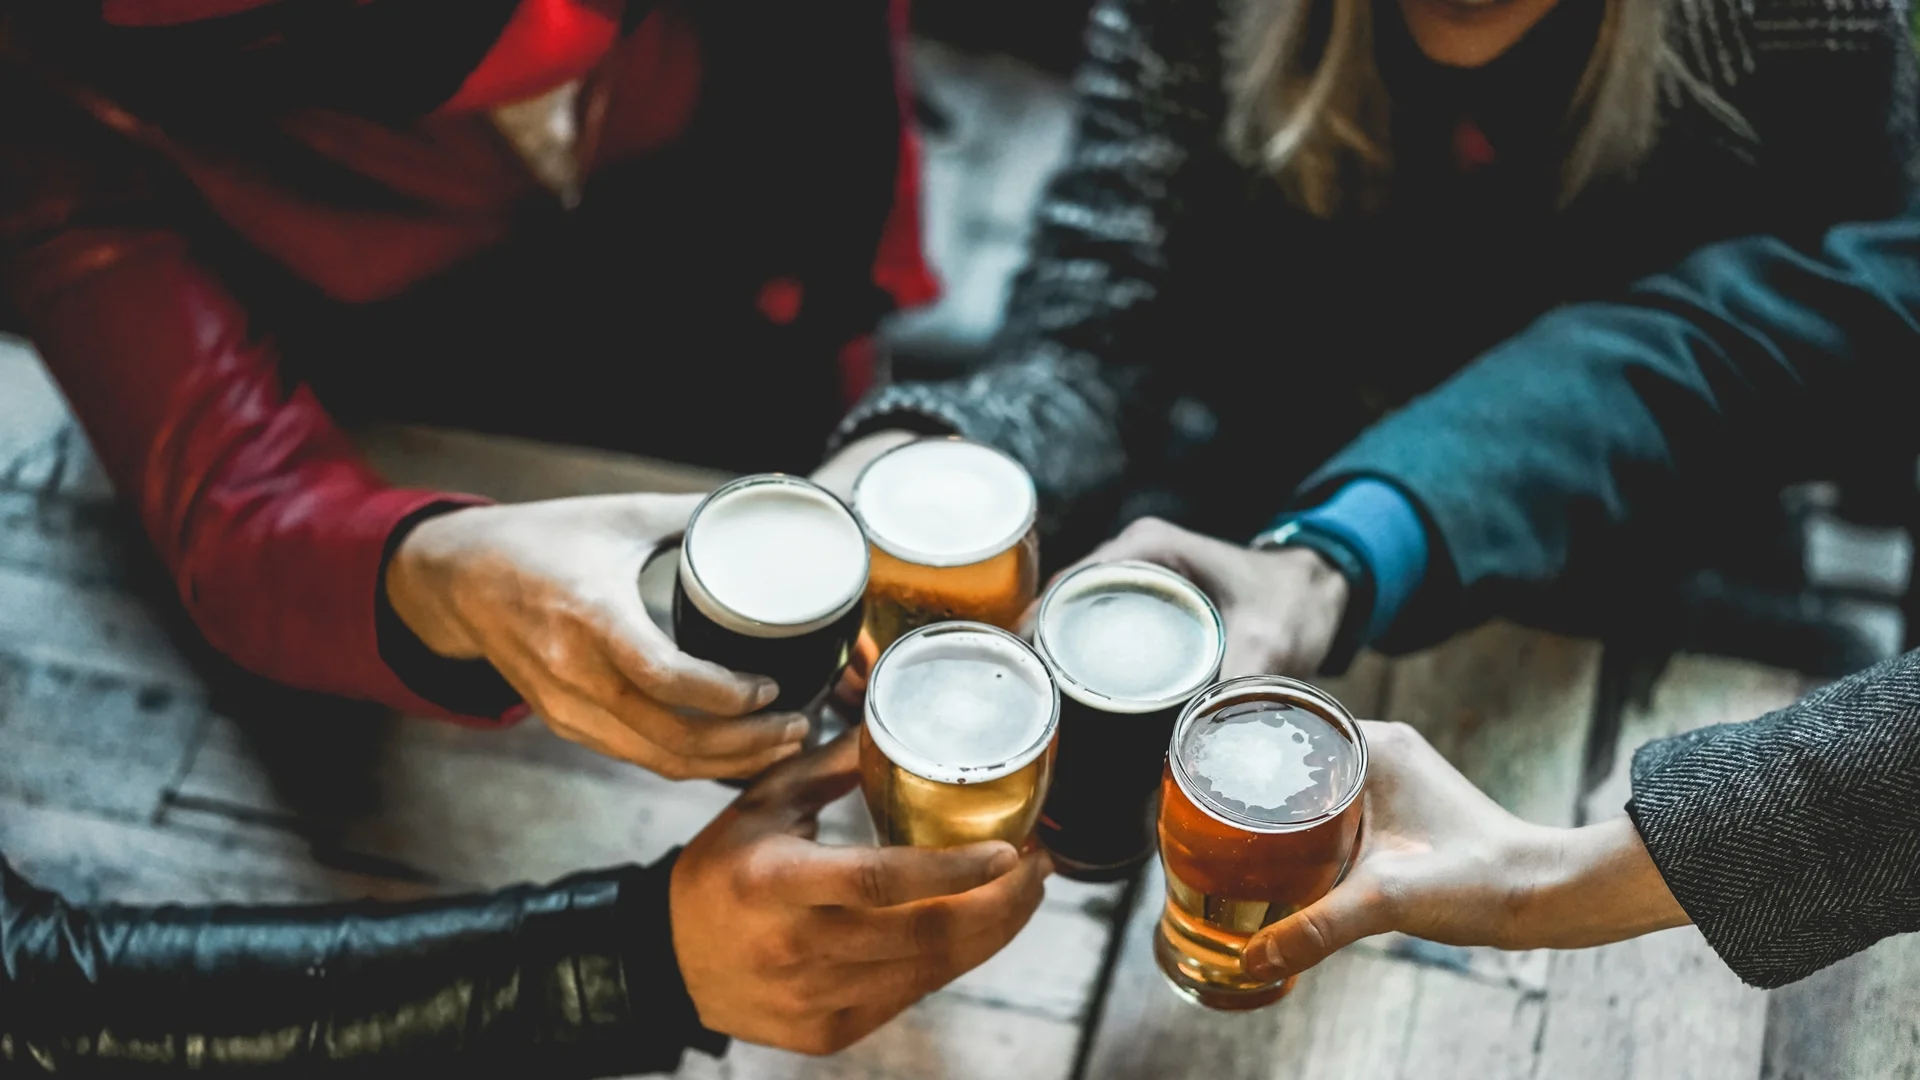 Етикет при пиене на алкохол: 15 правила, които не трябва да се нарушават